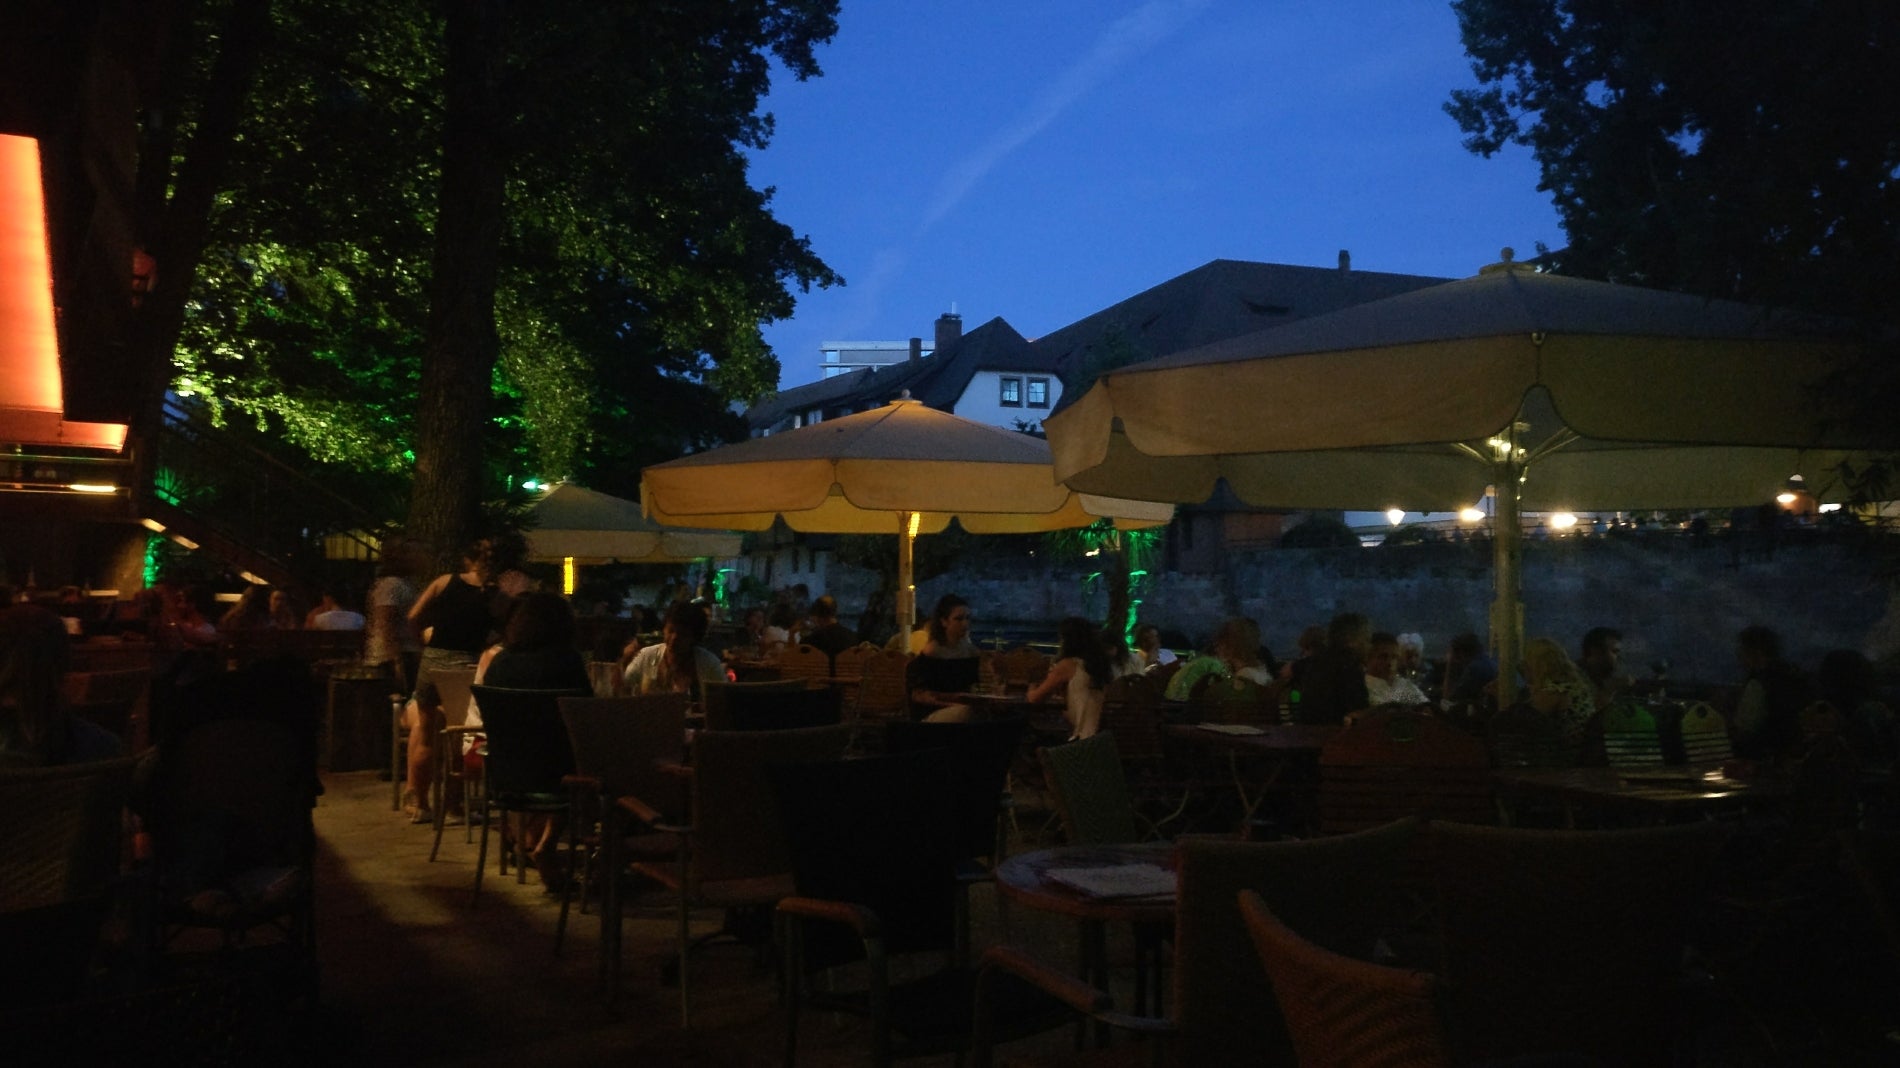 Finca & Bar Celona Nürnberg in Nürnberg – speisekarte.de